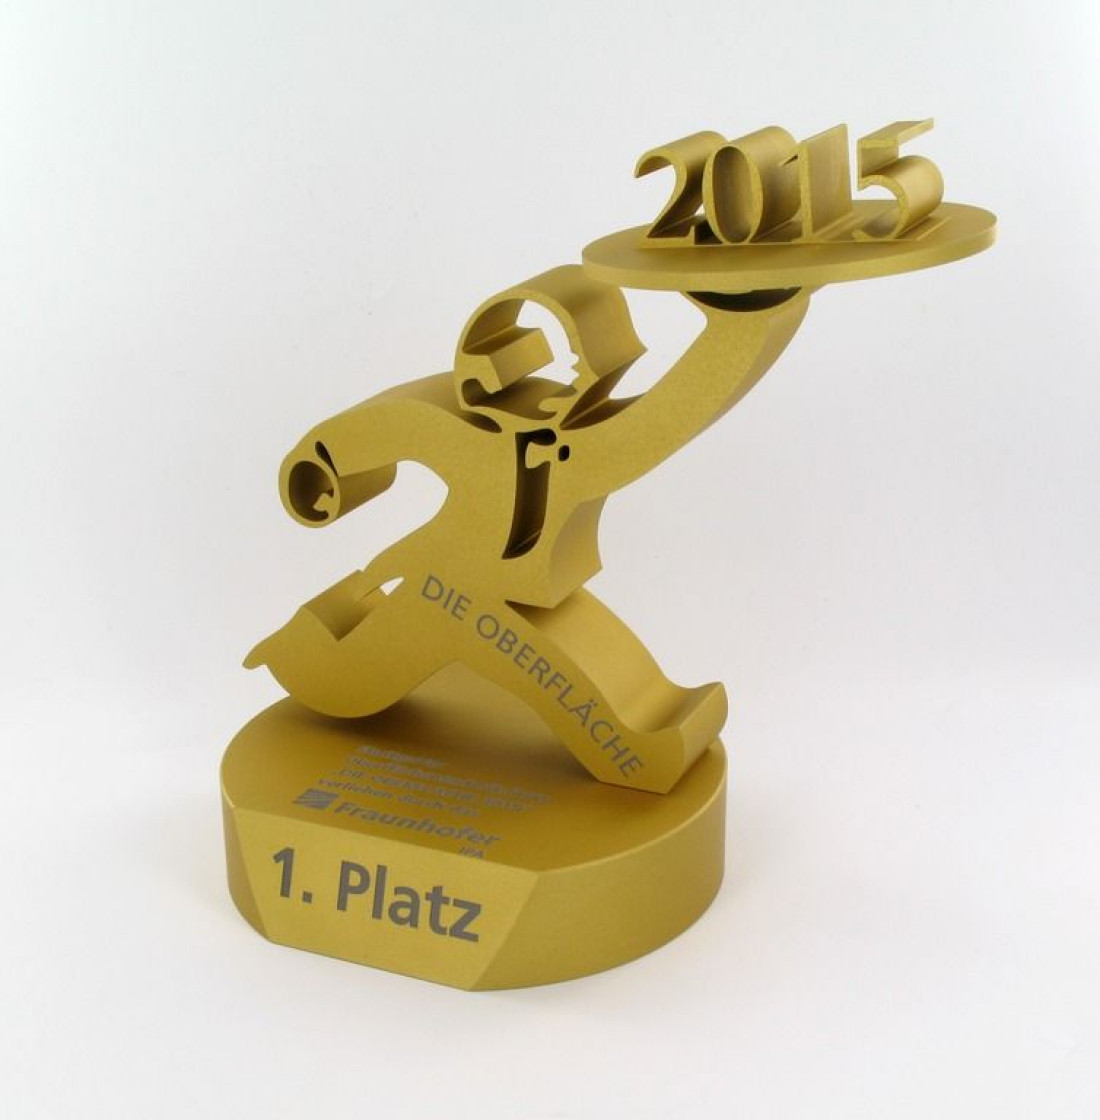 Nagroda "Powierzchnia roku 2015" dla StoColor Dryonic firmy Sto